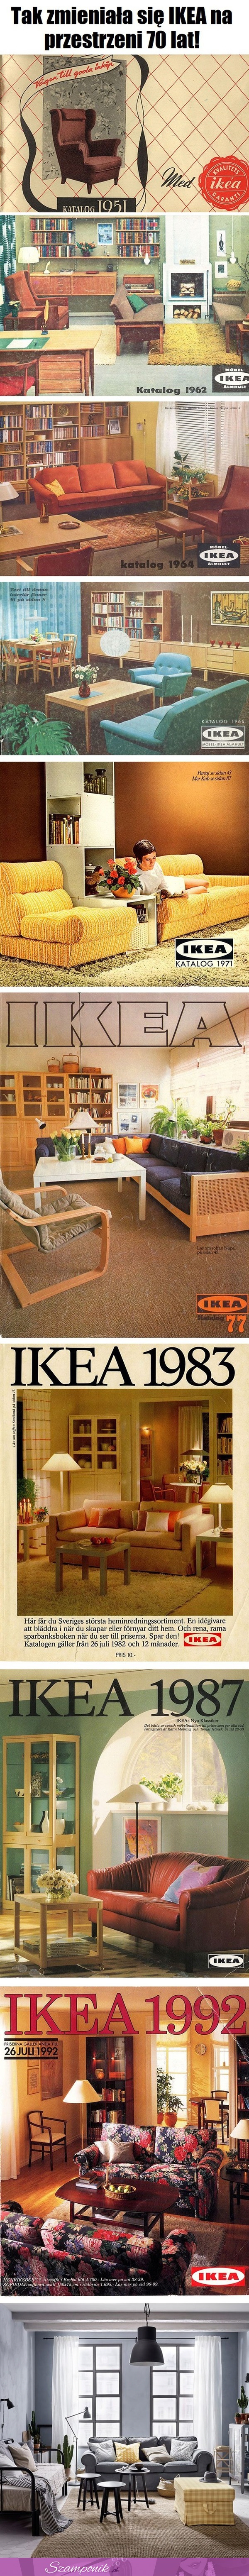 Tak zmieniała się IKEA na przestrzeni 70 lat